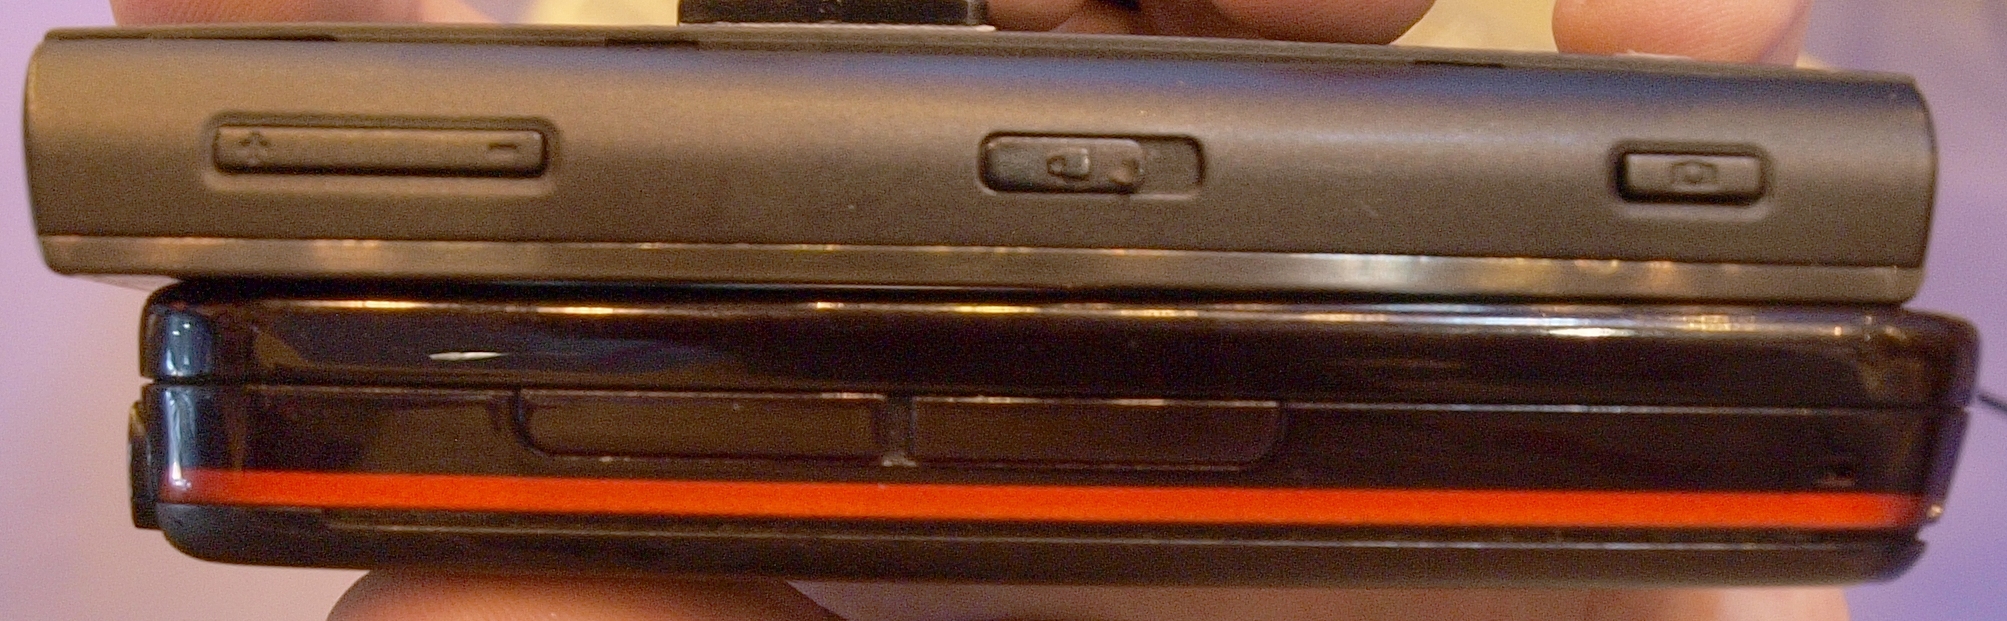 Nokia X6 5800